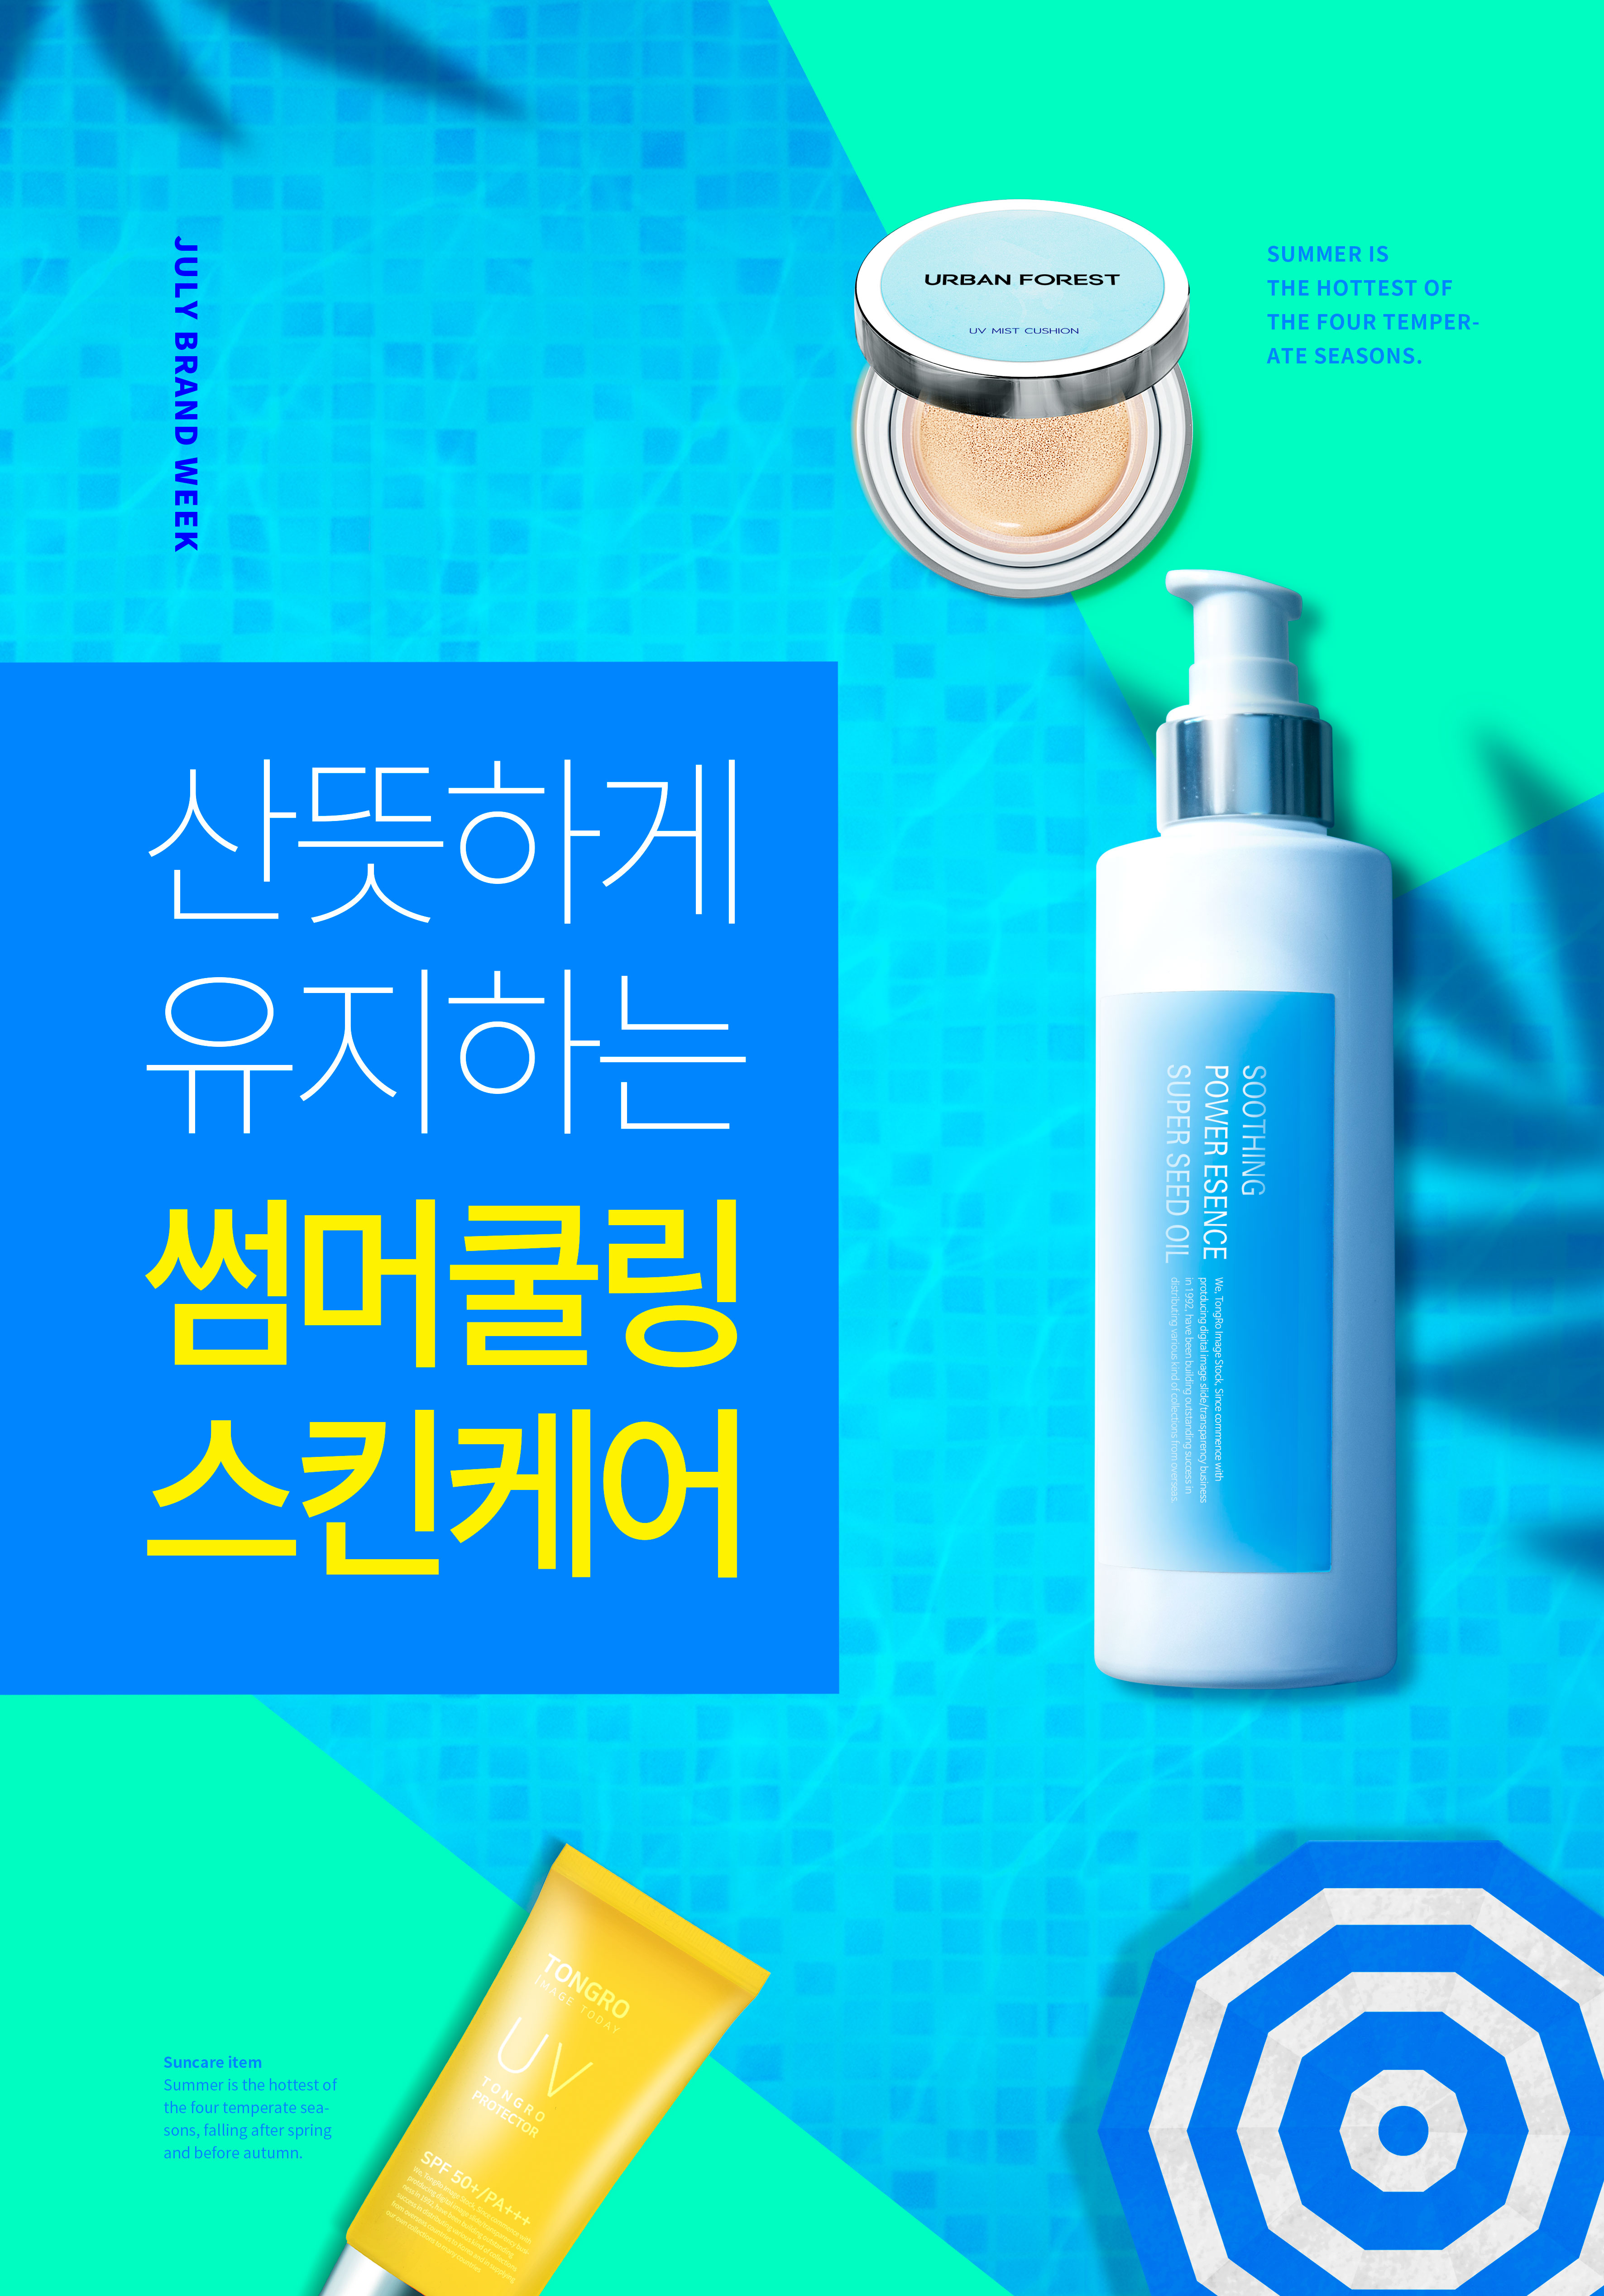 夏季防晒补水护肤化妆品广告海报模板套装[PSD]插图(2)